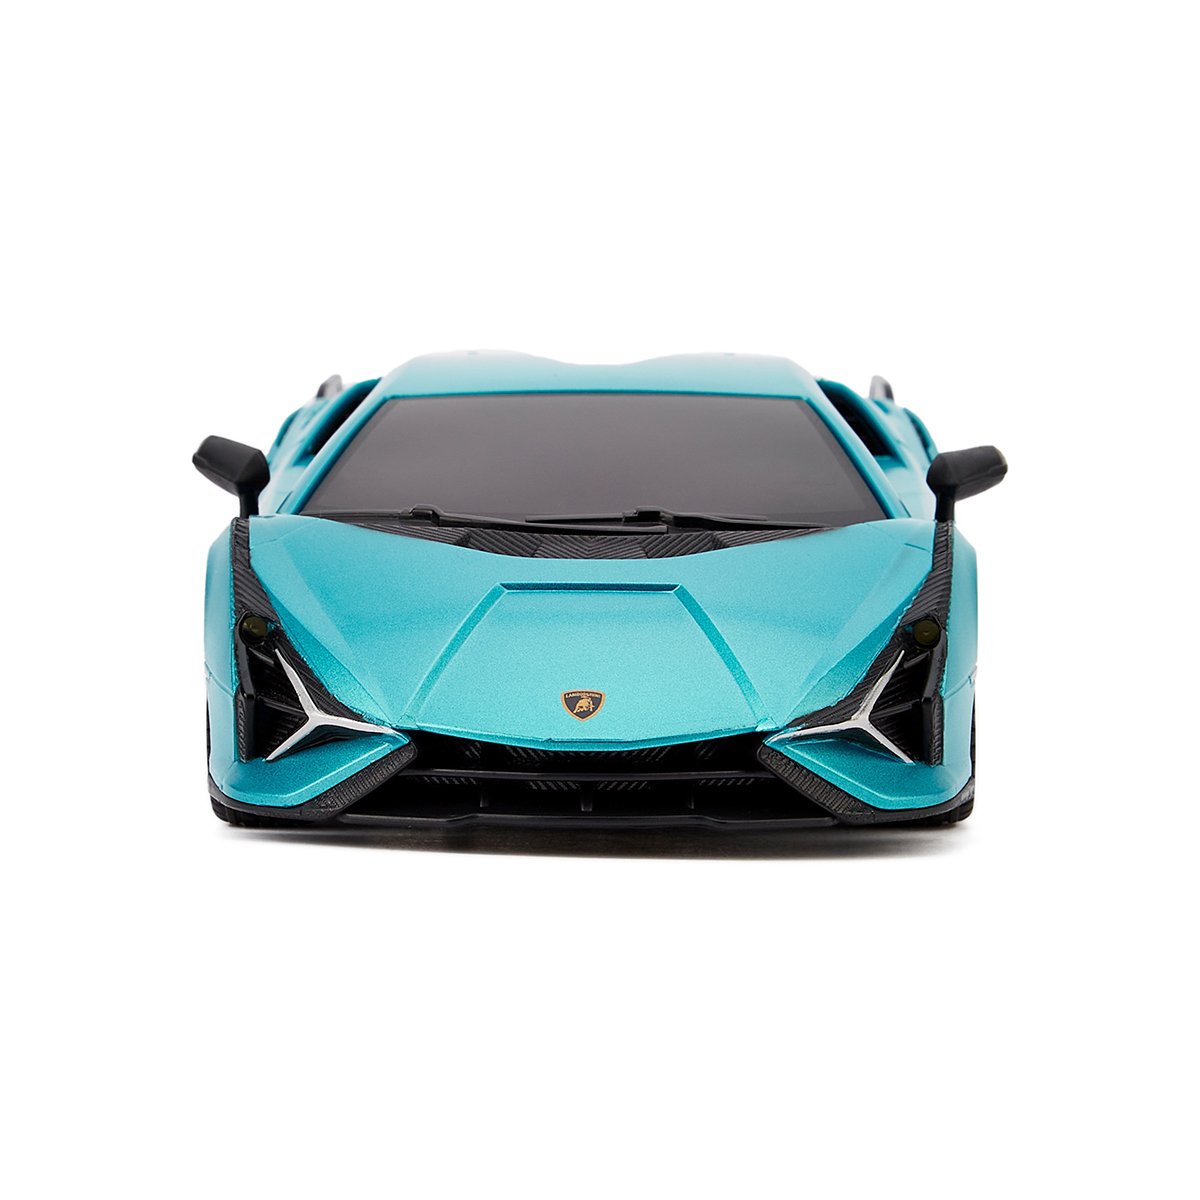 Автомобиль KS Drive на р/у Lamborghini Sian 1:24, 2.4Ghz синий (124GLSB) - фото 2